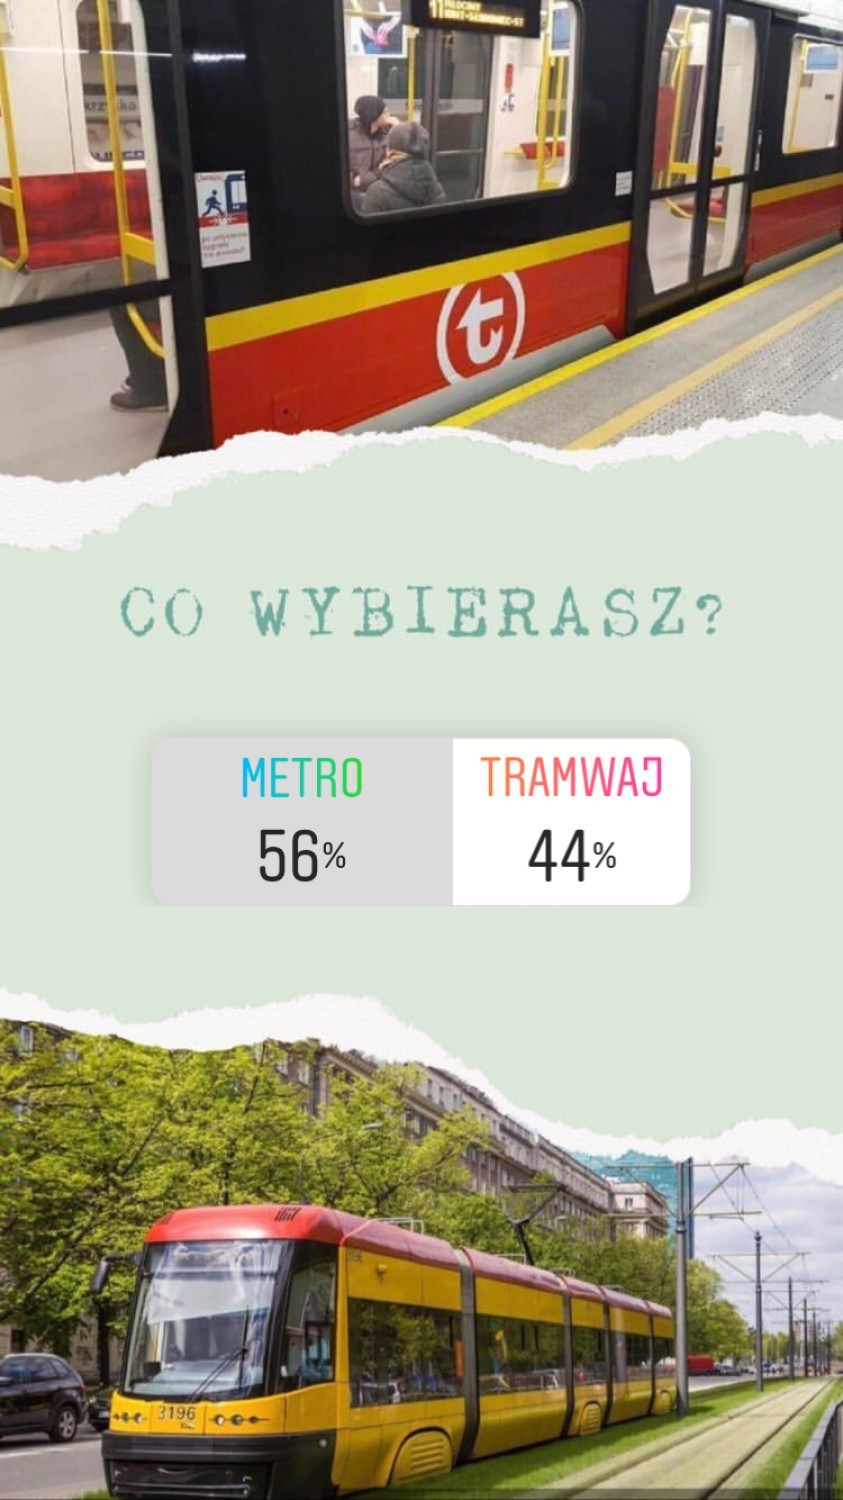 Metro vs Tramwaj

Wielbicieli metra w Warszawie jest...